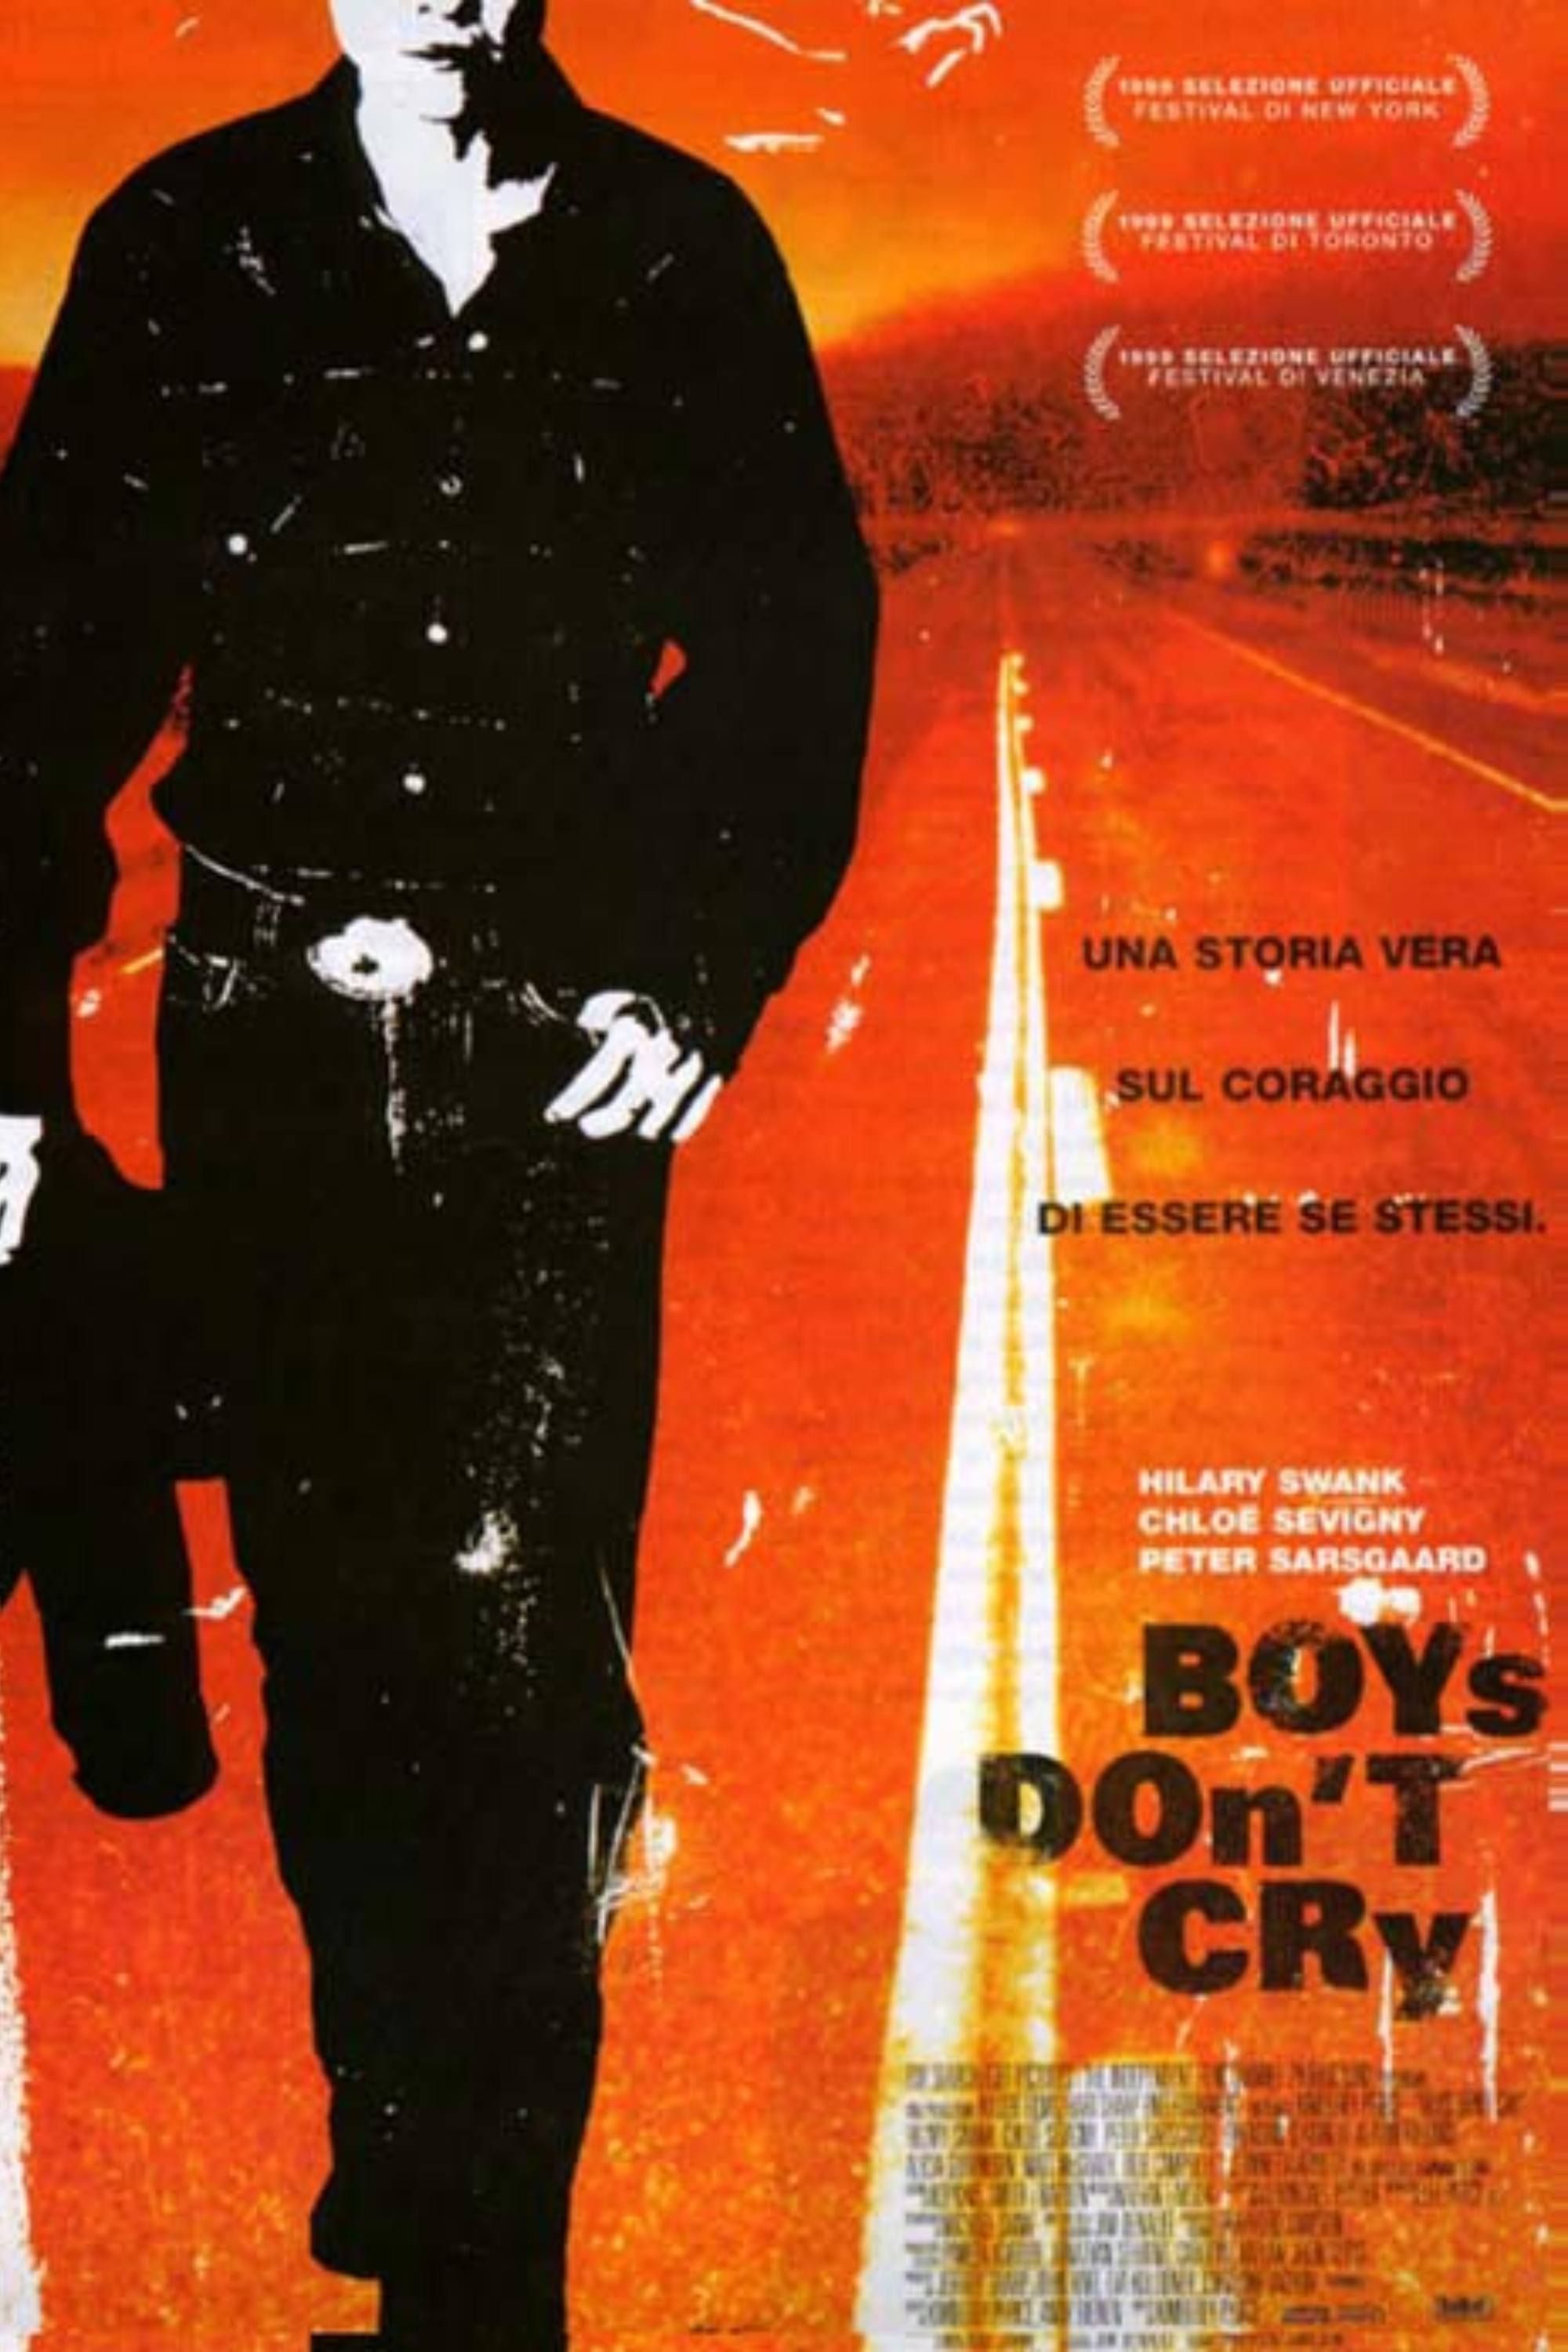 El cartel de Boys Don't Cry muestra a un hombre caminando por una carretera sombreada en tonos naranjas.